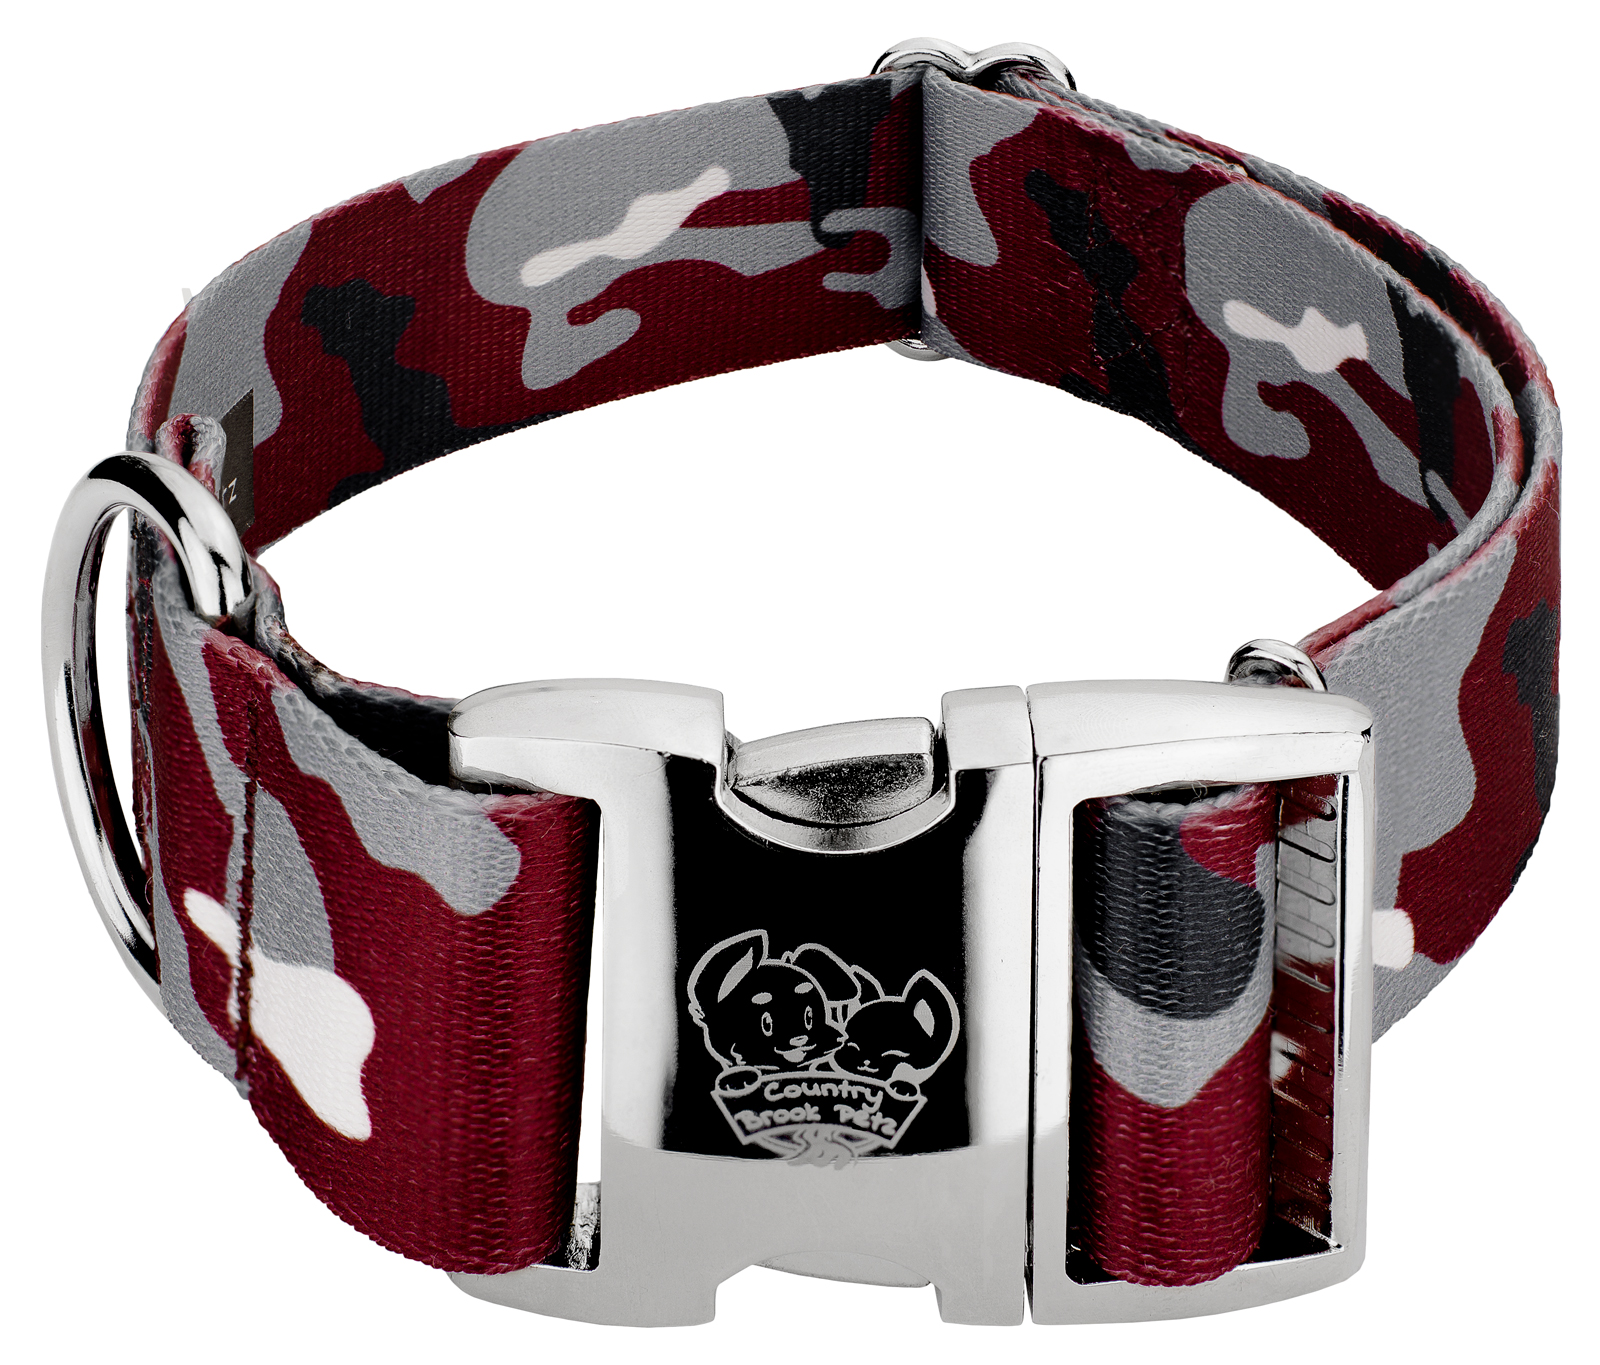 Country Brook Petz® 1 1/2 inch Premium Crimson and White Camo Dog Collar, Medium - image 1 of 5